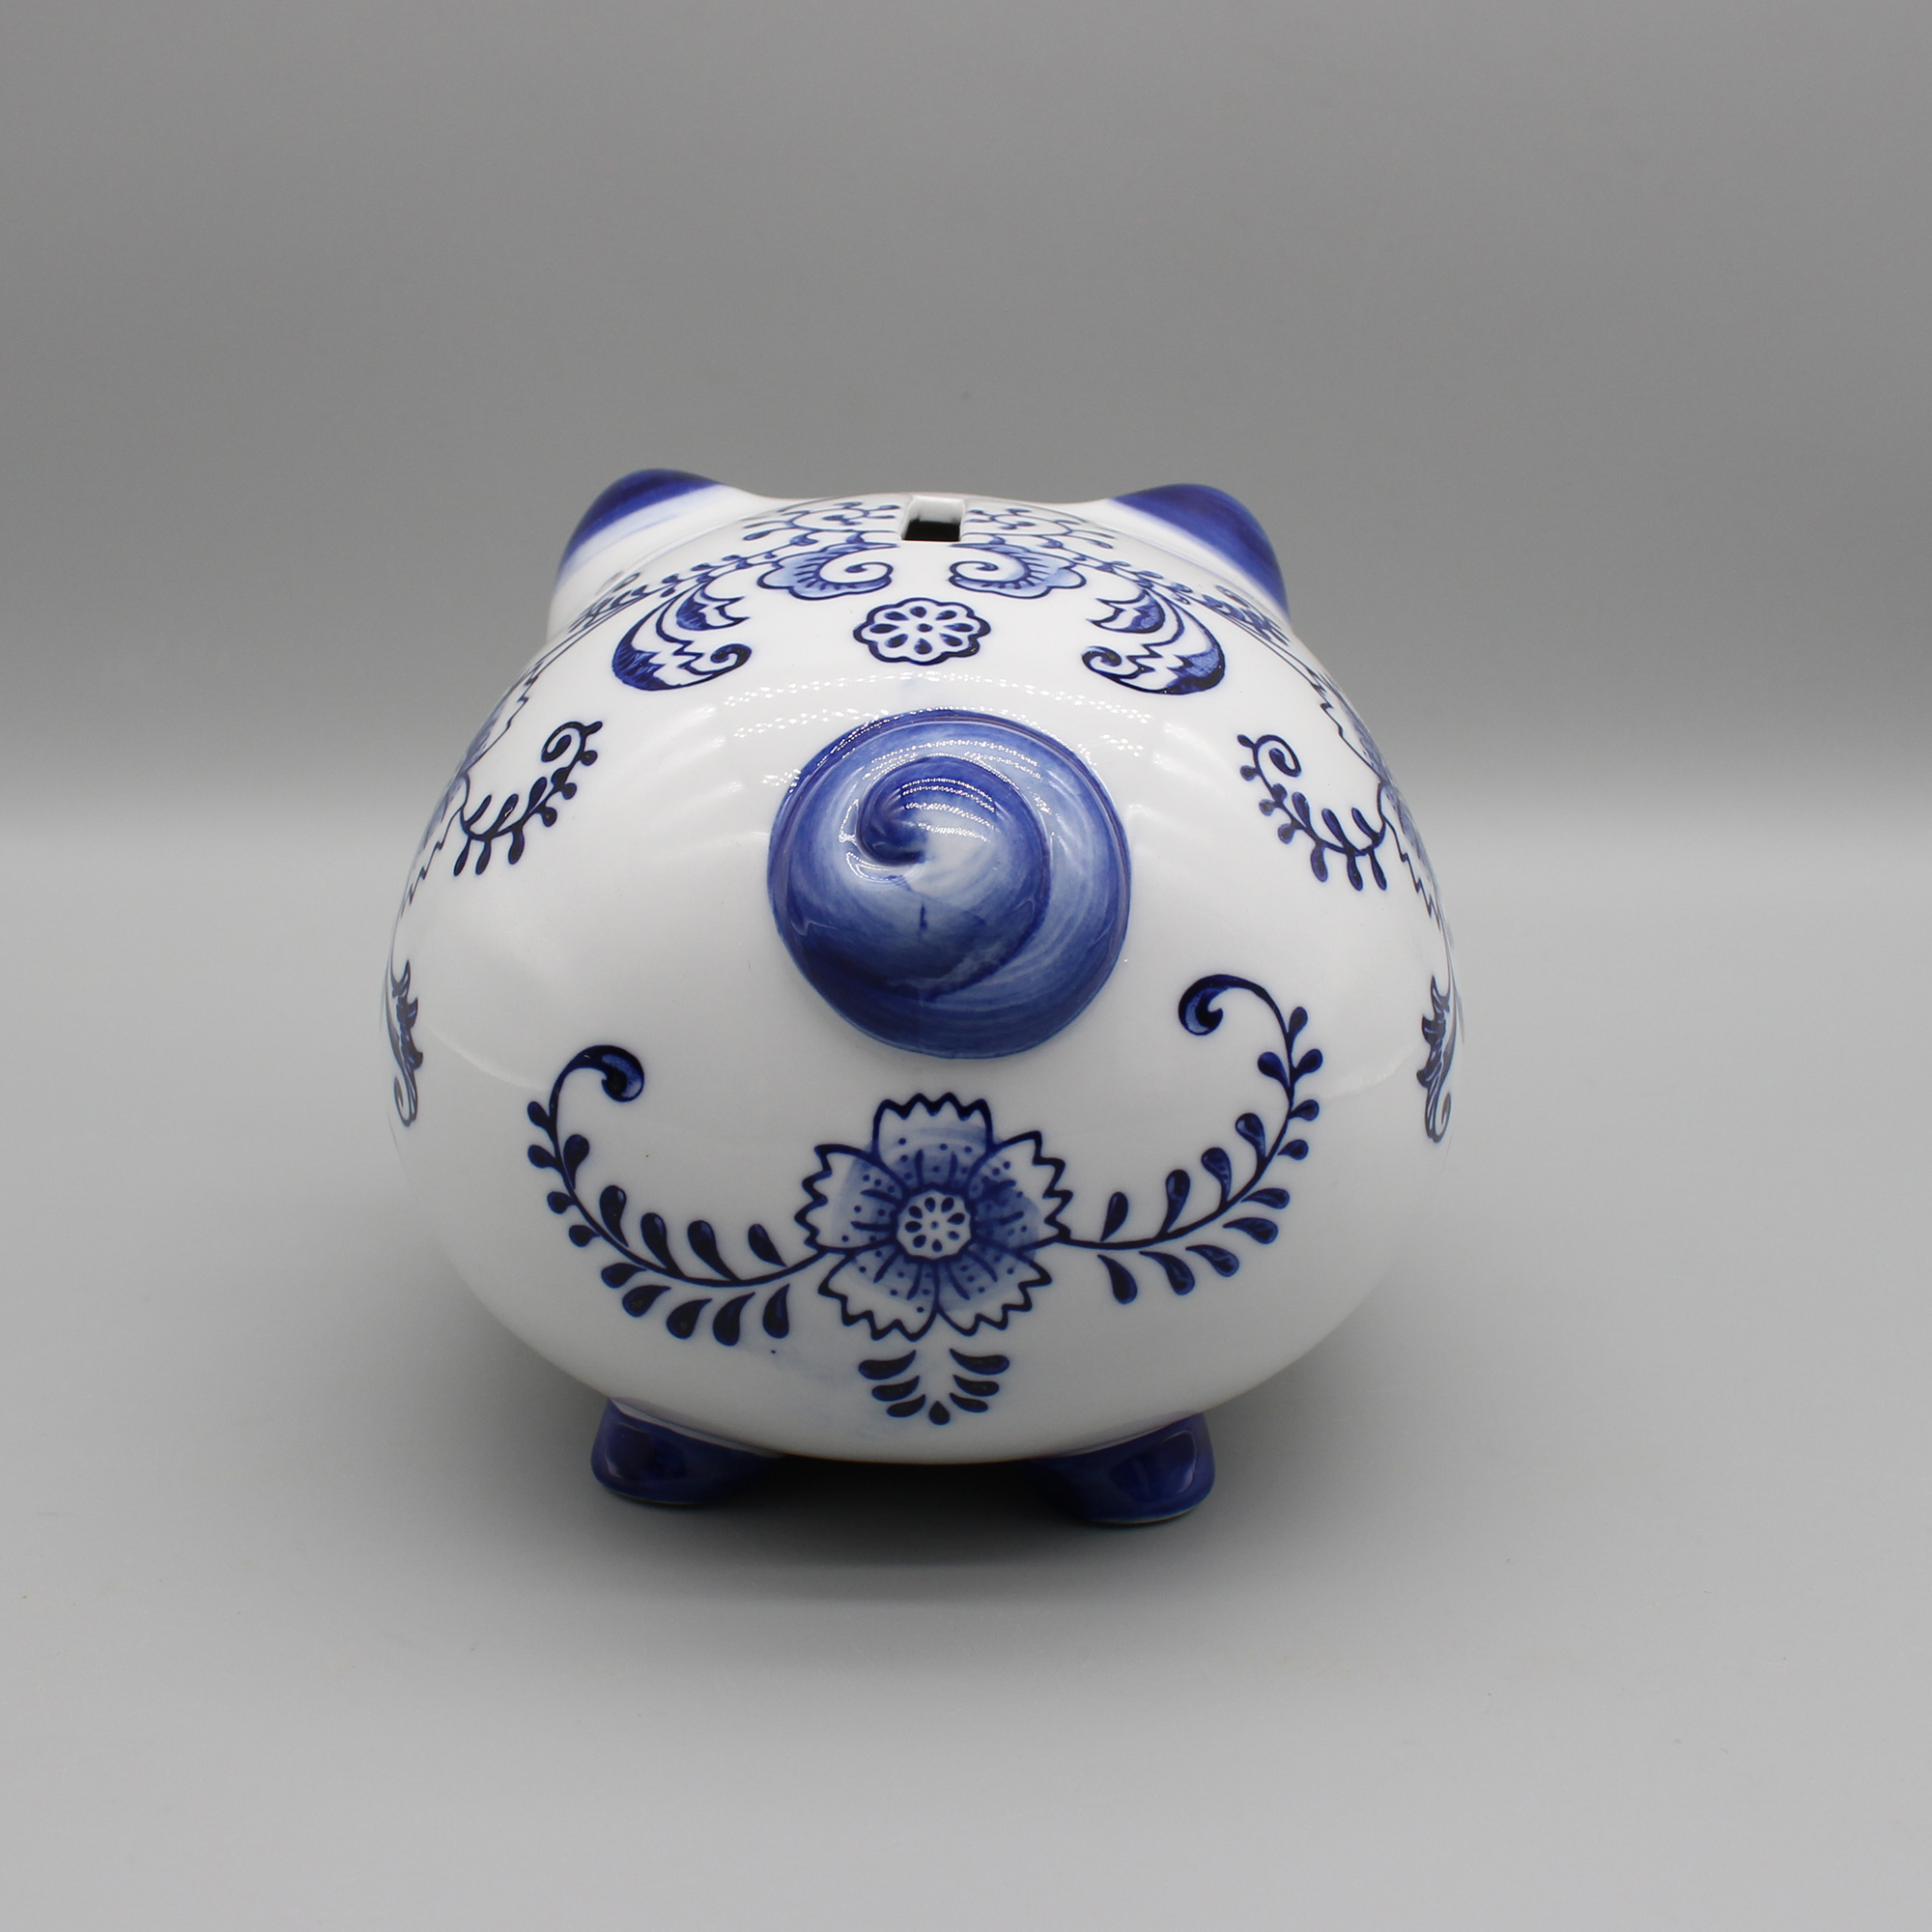 Tirelire en céramique, cochon en céramique, céramique bleue et blanche, accessoire de table, décoration de la maison